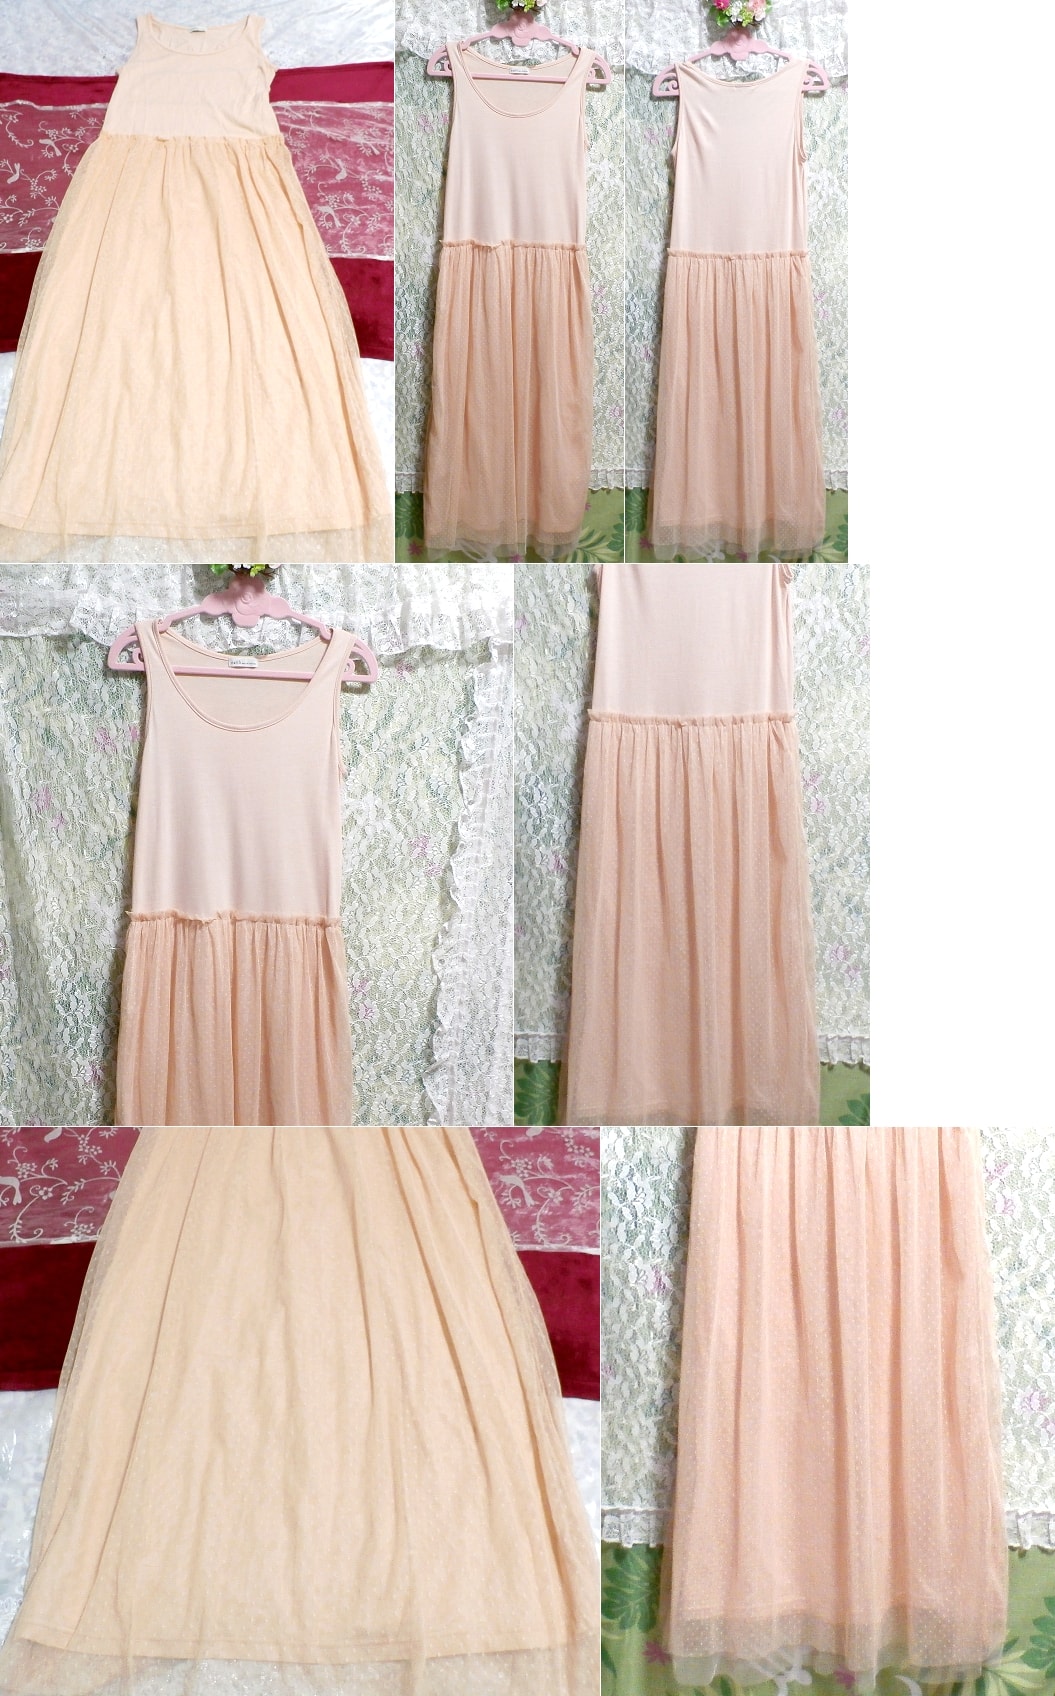 핑크 레이스 민소매 롱 스커트 네글리제 나이트가운 맥시 드레스, 롱 스커트, m 사이즈